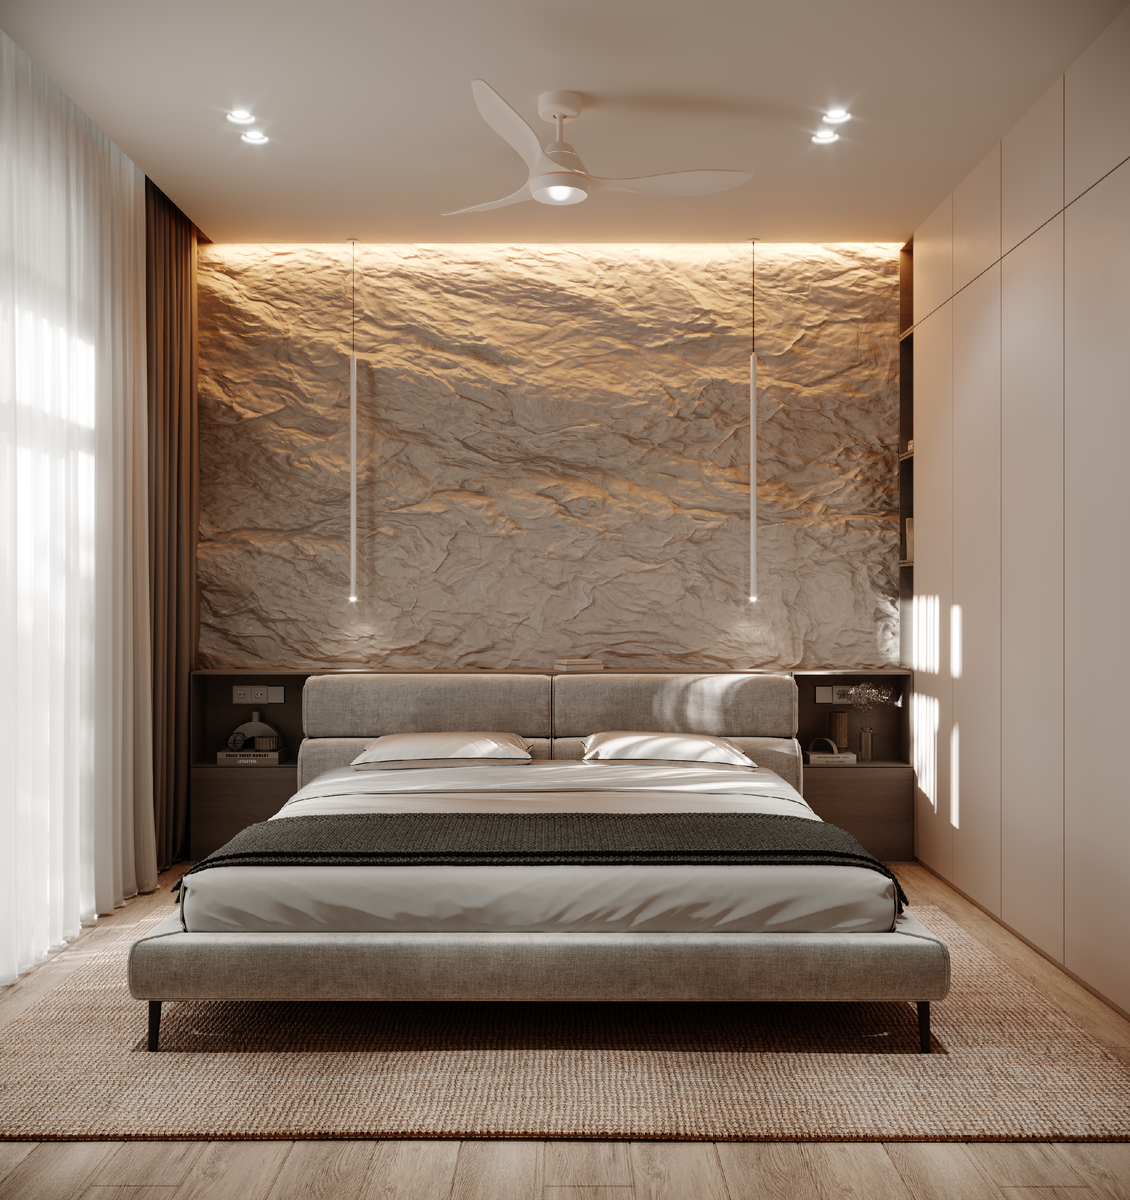 Бежевый цвет в дизайне интерьера является очень модным вариантом для окраски стен, оформлении фасадов мебели и кухни.